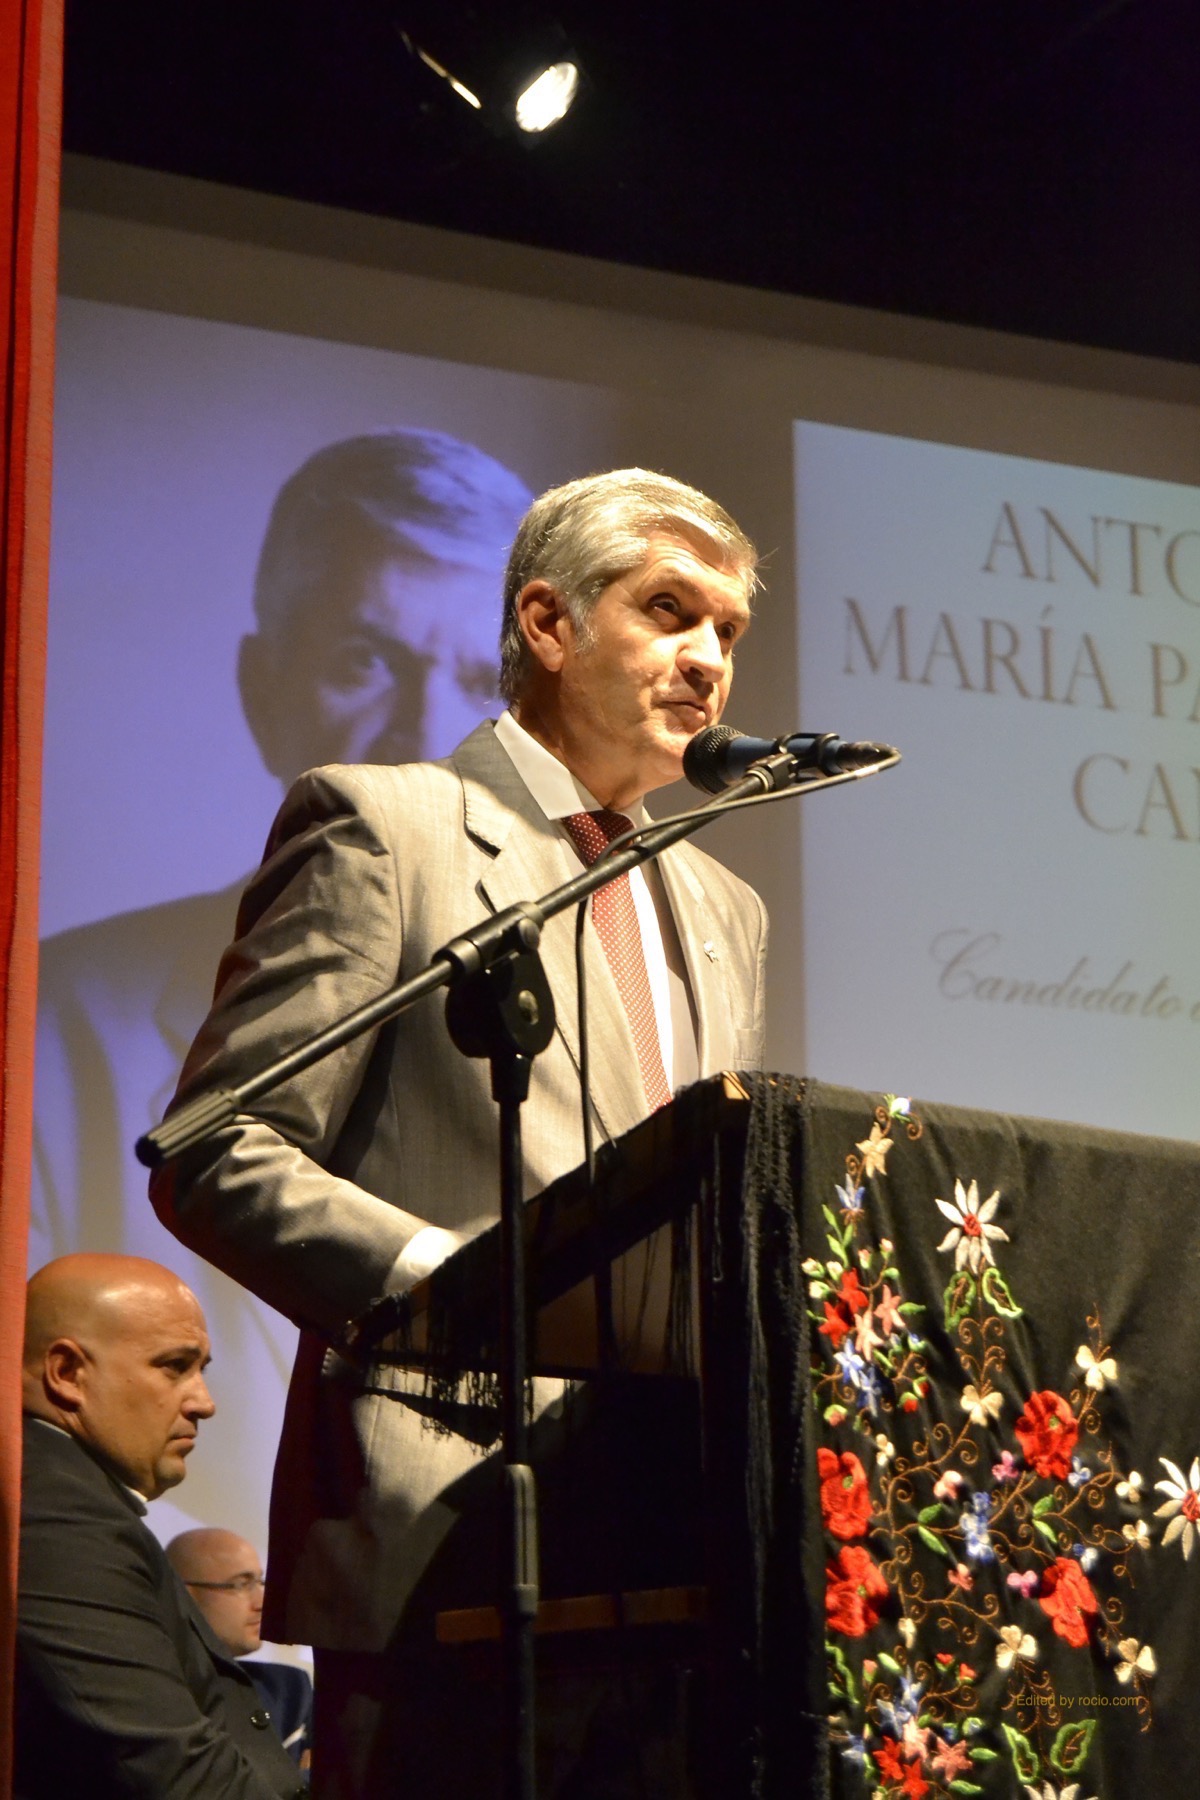 Antonio-Maria-Palomar-presenta-su-candidatura-a-Hermano-Mayor-a-la-Hermandad-del-Rocio-de-Gines-5